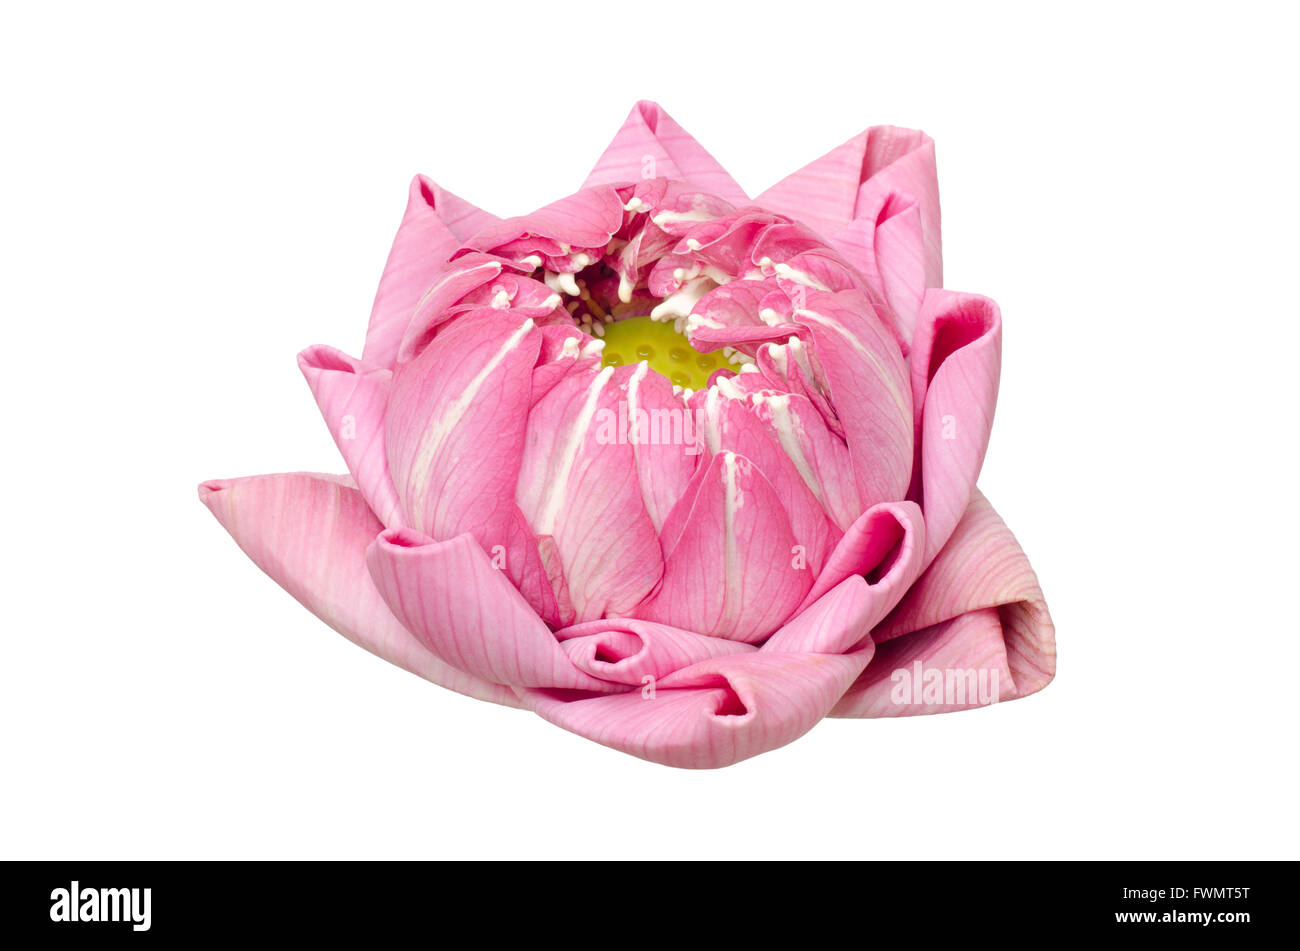 folding lotus thai style isolated on white background Stock Photo